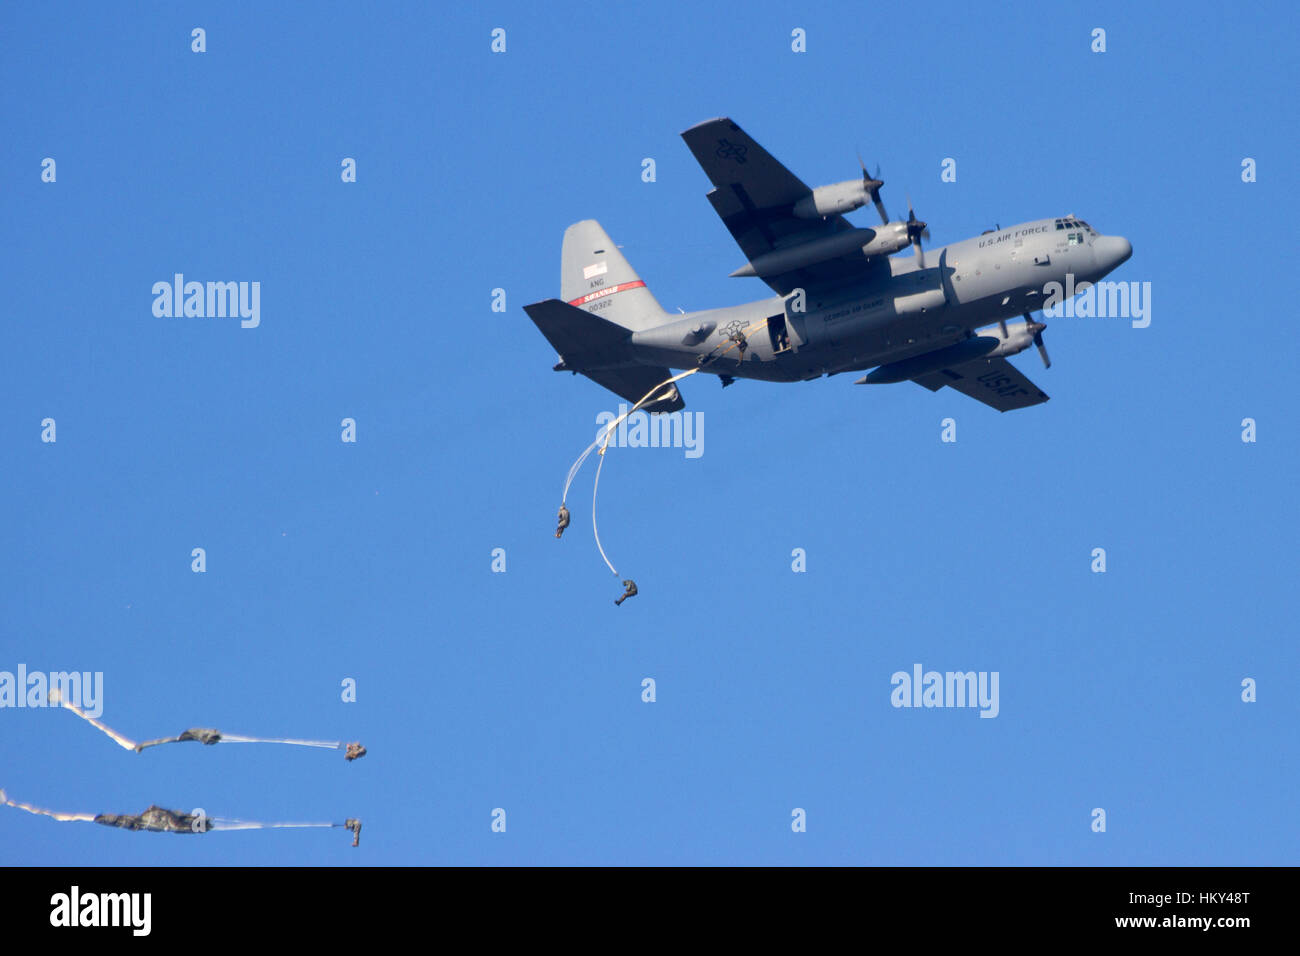 GROESBEEK, Niederlande - SEP 18: A USAF C-130 Hercules Fallschirmjäger von der 82. US-Luftlandedivision an der Operation Market Garden Memoria sinkt Stockfoto